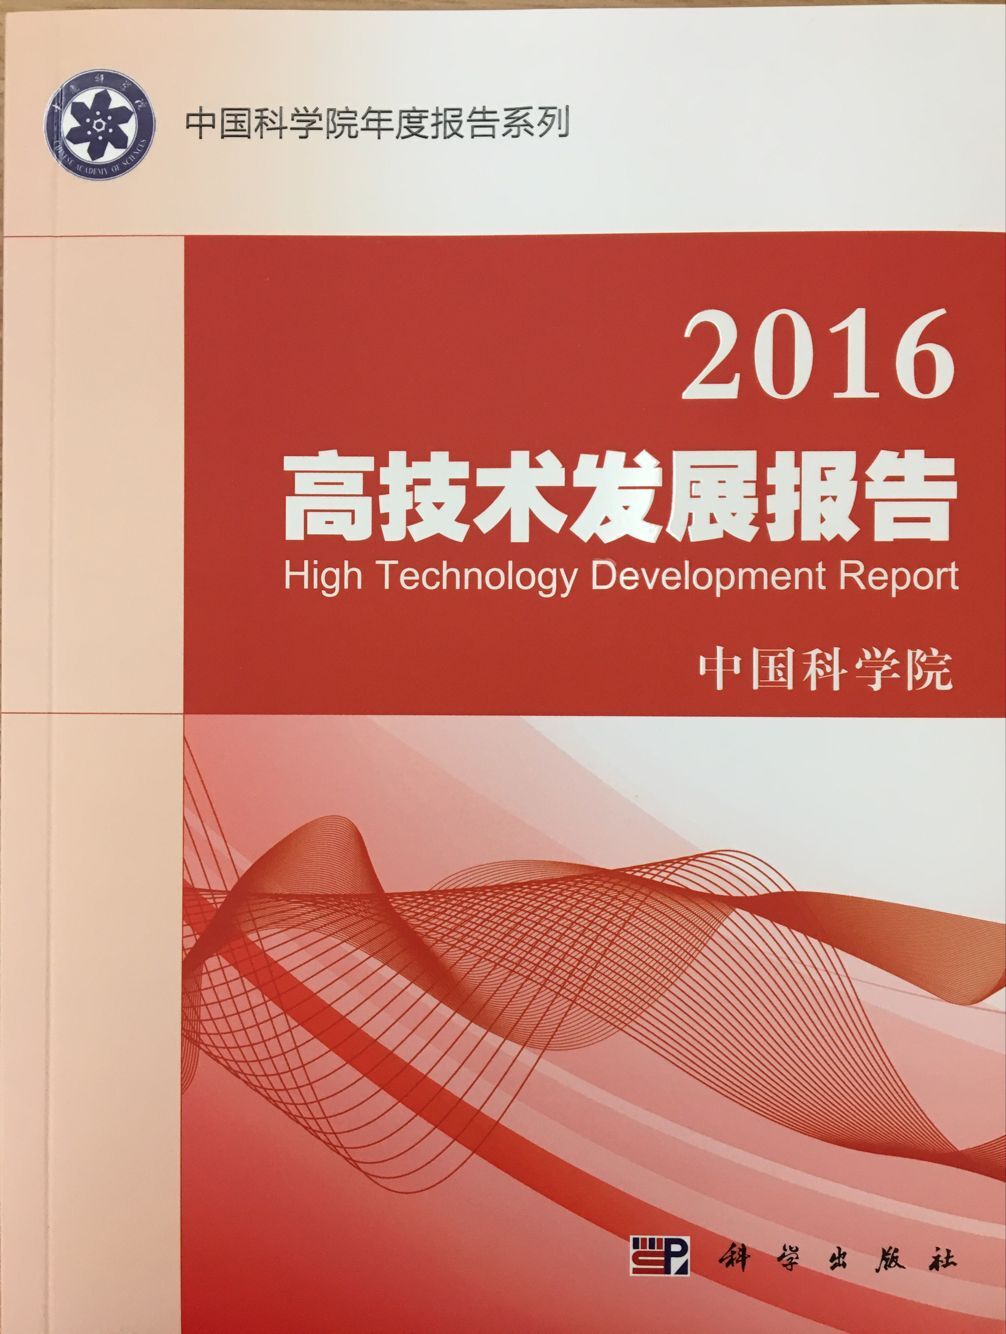 《2016高技术发展报告》